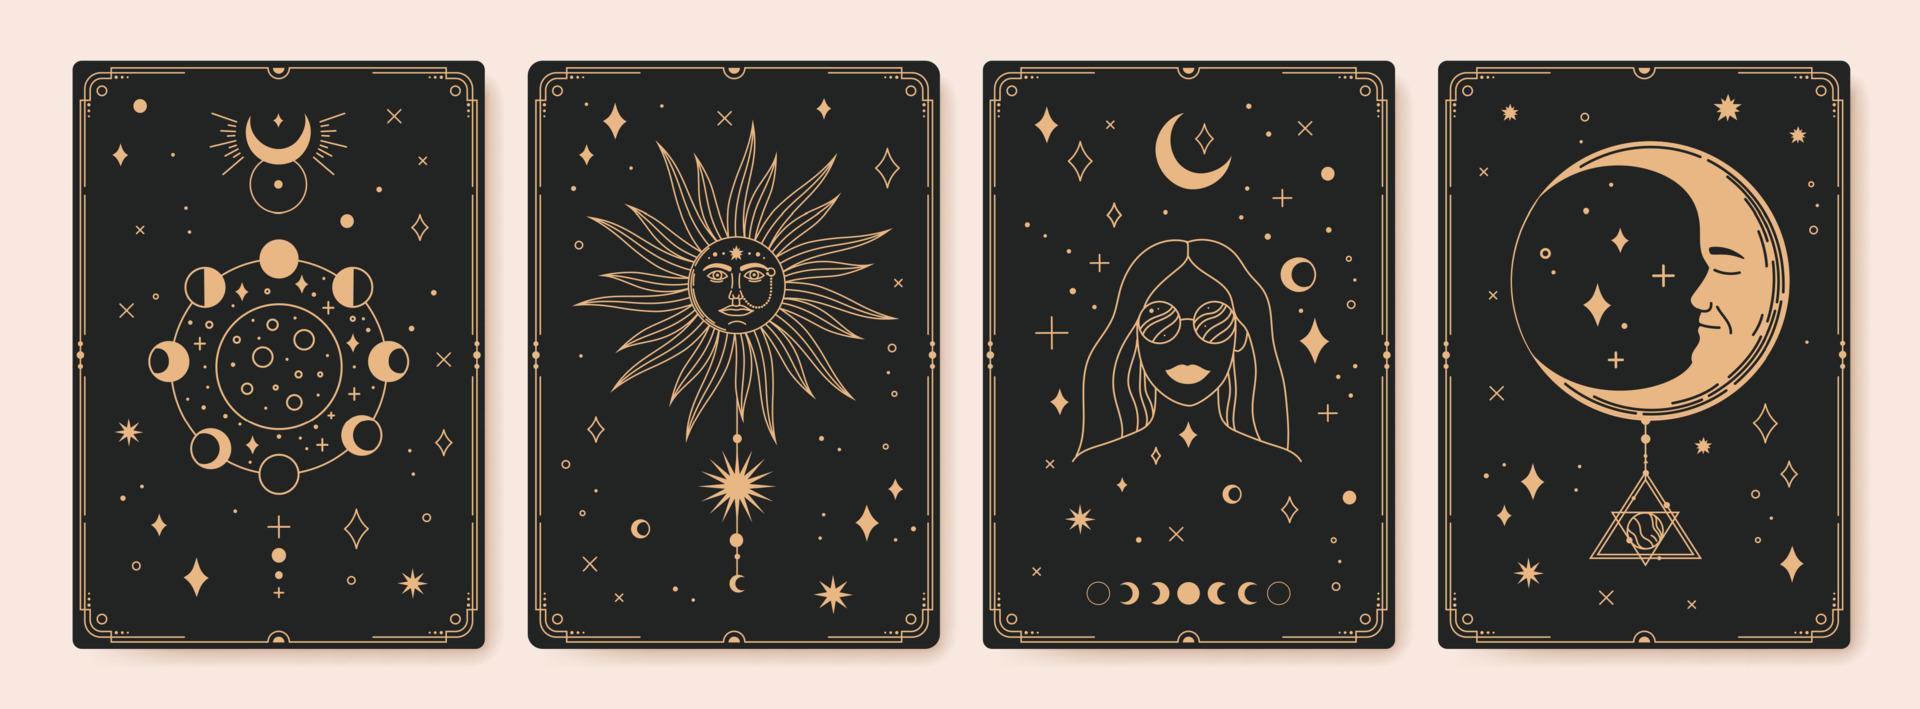 mystisk astrologi tarot kort, bohemisk ockult kort. årgång graverat esoterisk kort med måne faser, helig Sol och stjärnor vektor uppsättning